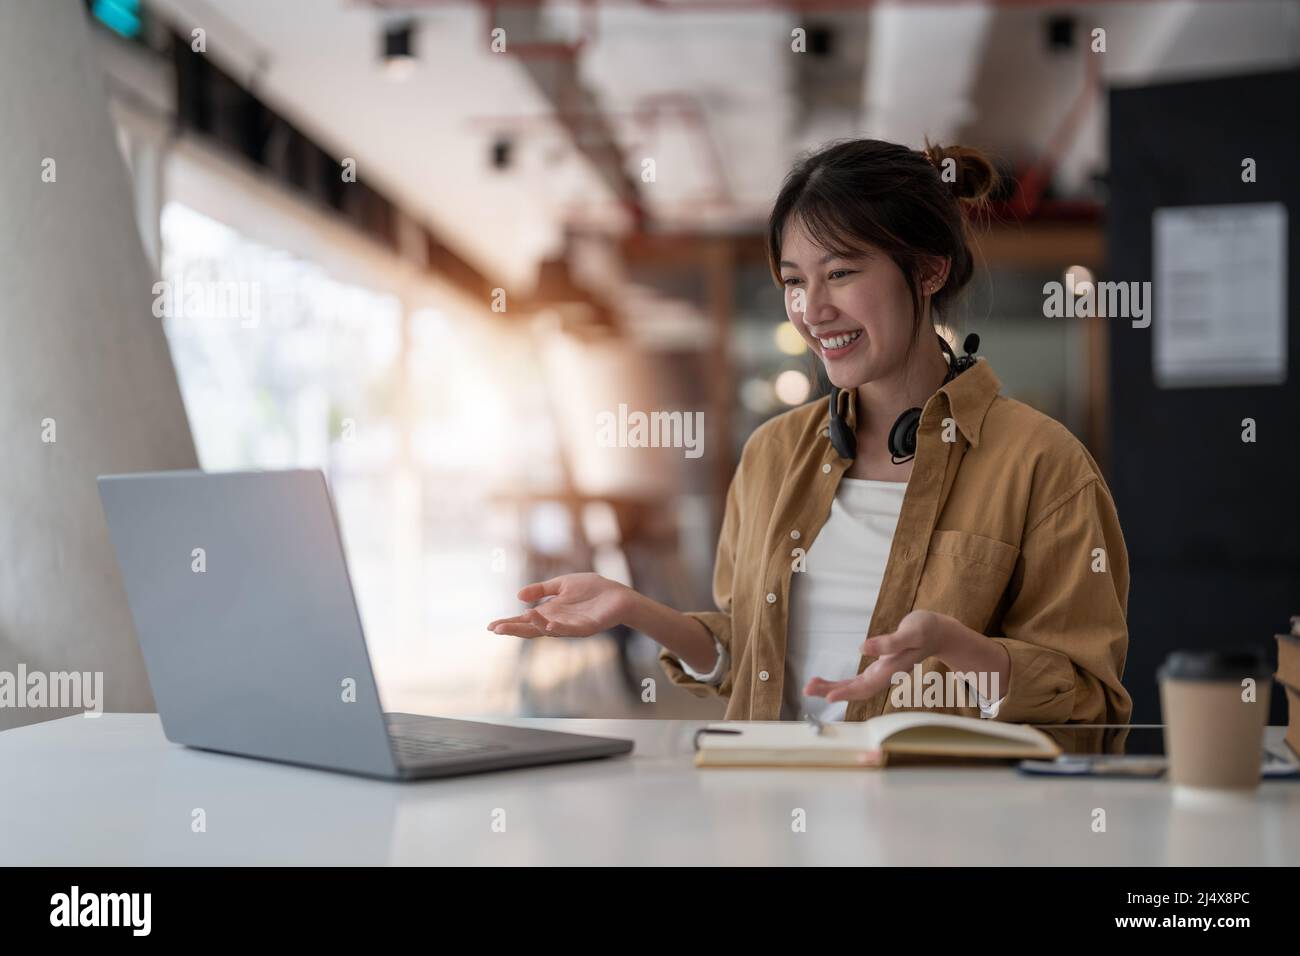 femme asiatique souriante, pigiste, portant un casque, communiquant avec le client via un appel vidéo sur ordinateur. Tuteur féminin professionnel agréable millénaire Banque D'Images